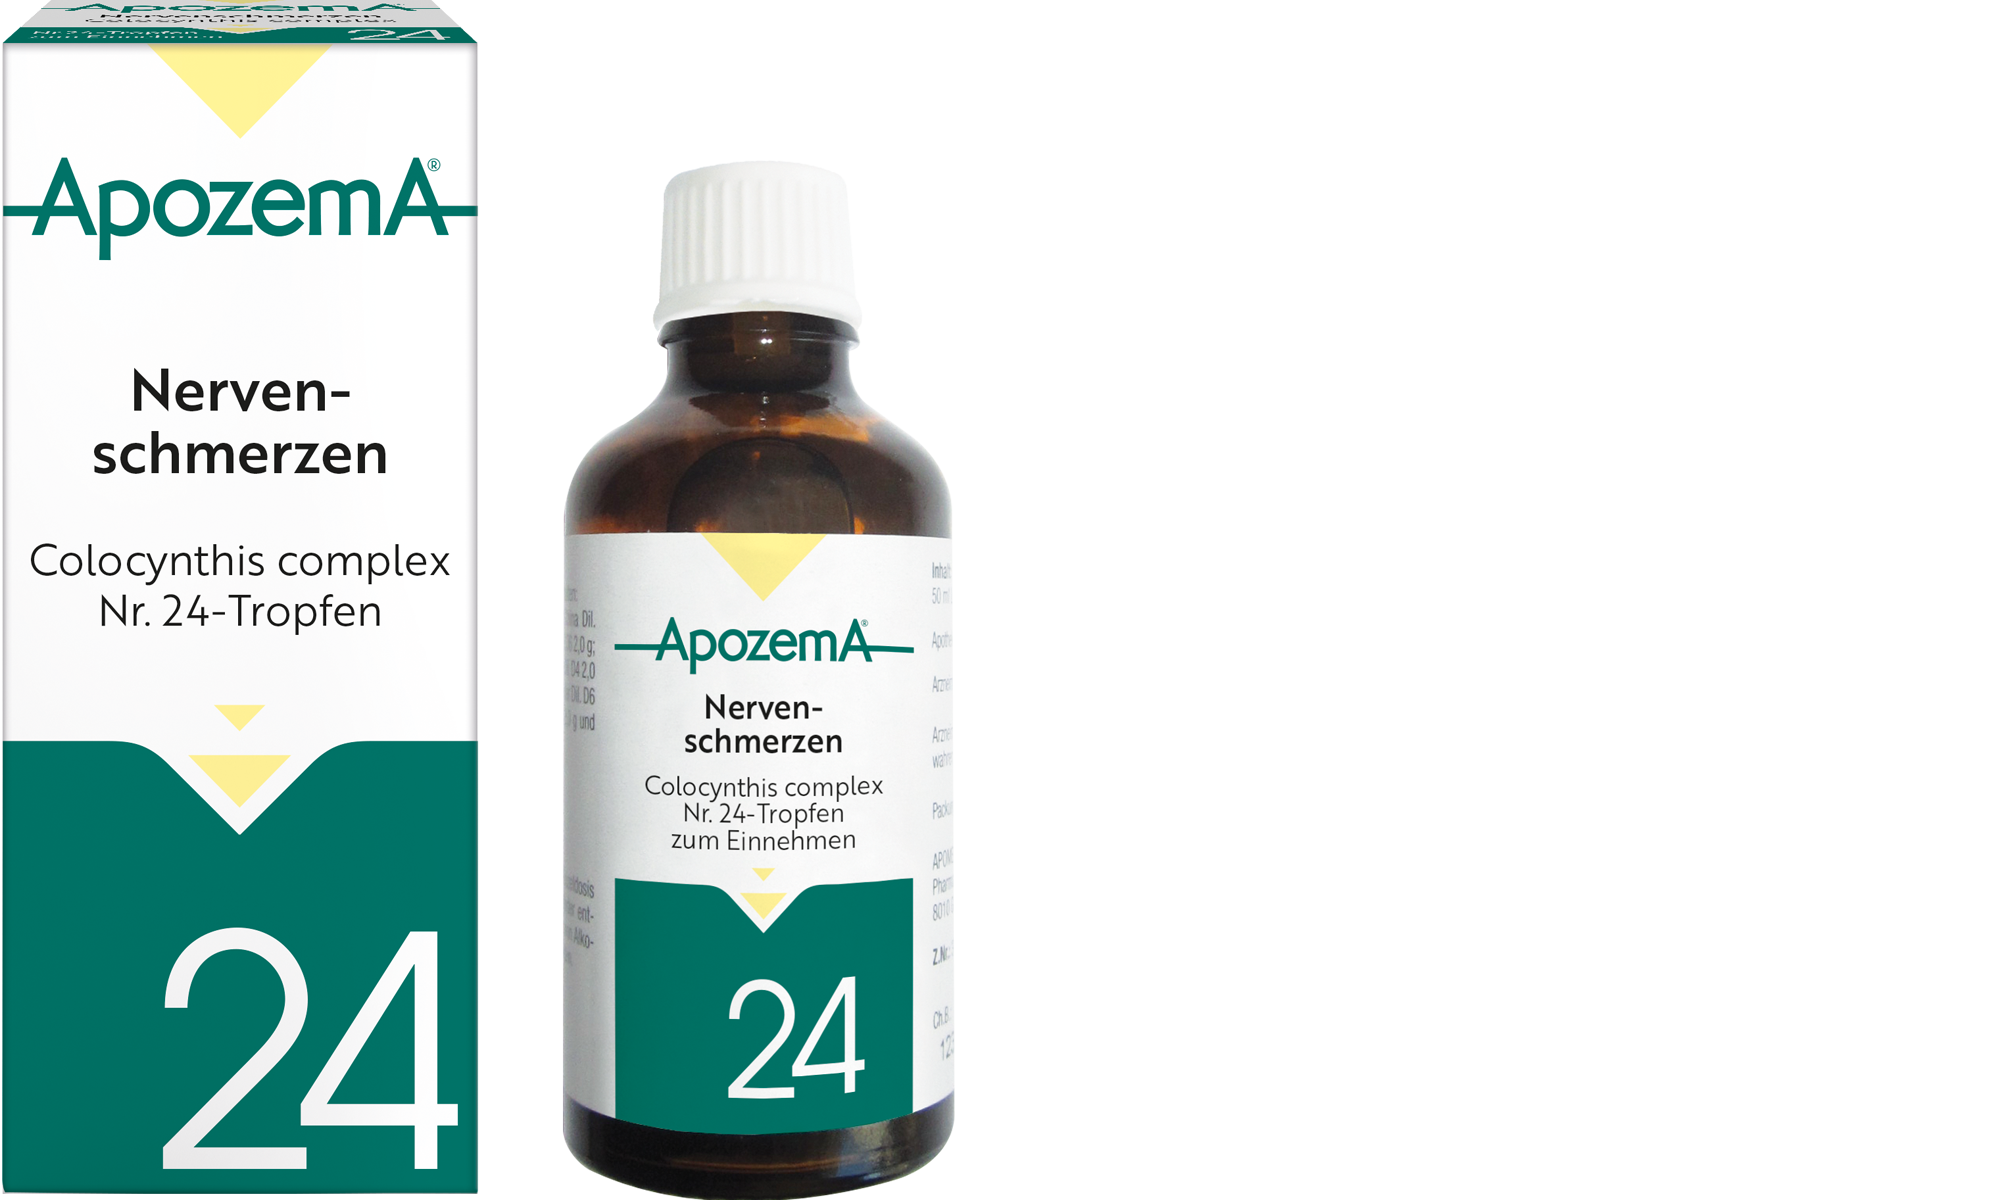 Apozema® Nervenschmerzen; Colocynthis complex Nr. 24-Tropfen